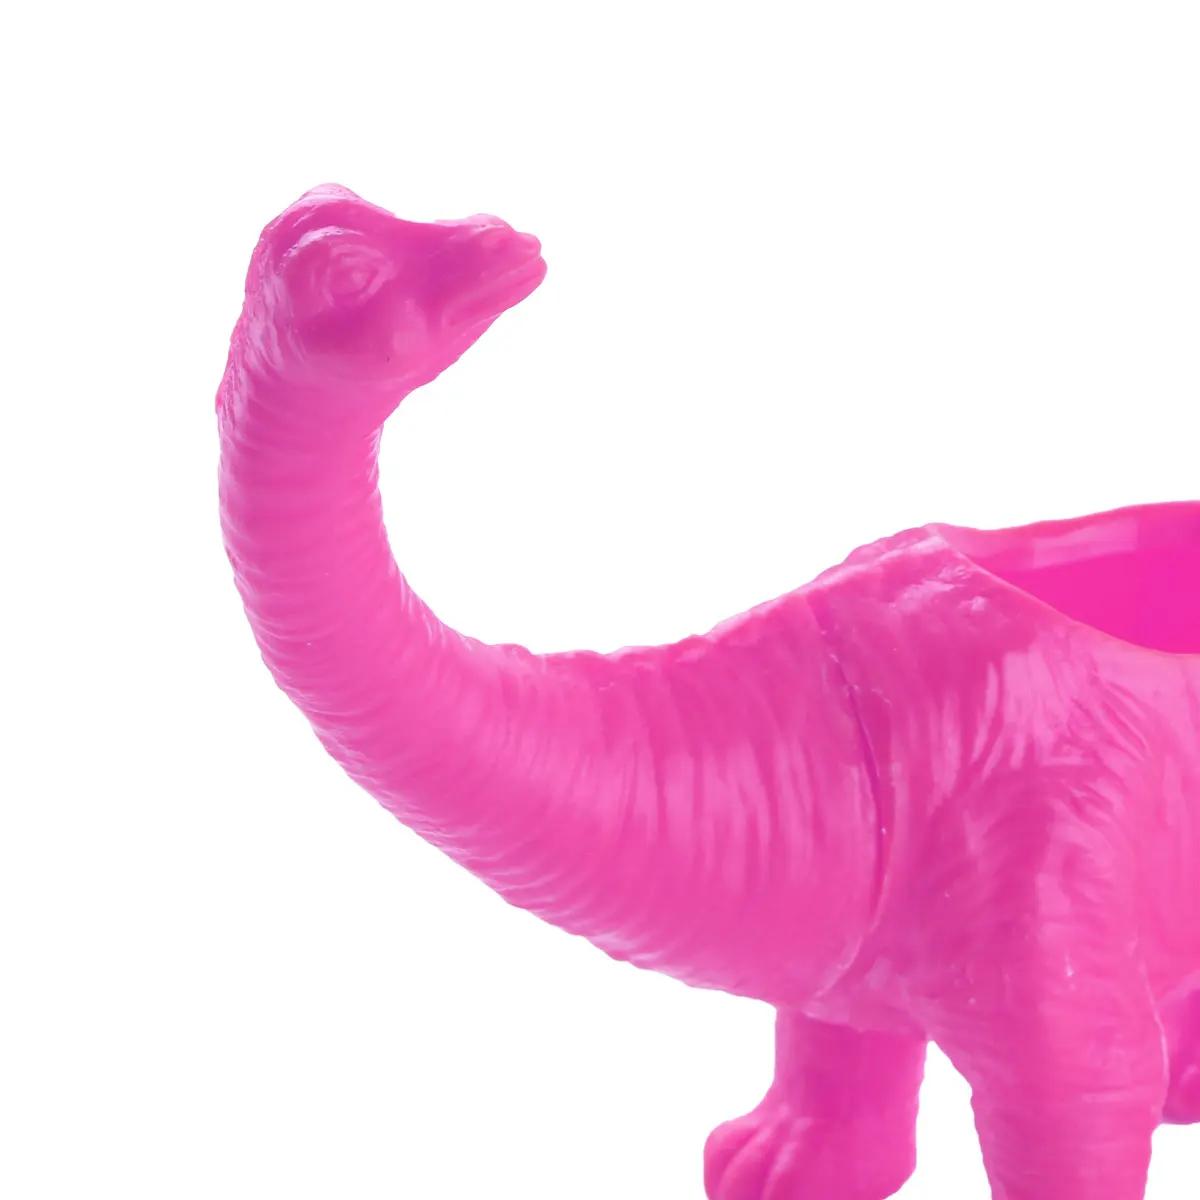 В НАЛИЧИИ В США Цветочный Горшок Бонсай Контейнер Плантатор Офисное Украшение Пластиковый Цветочный Горшок с Динозавром для Кактуса, Суккулента, Горшка - 4